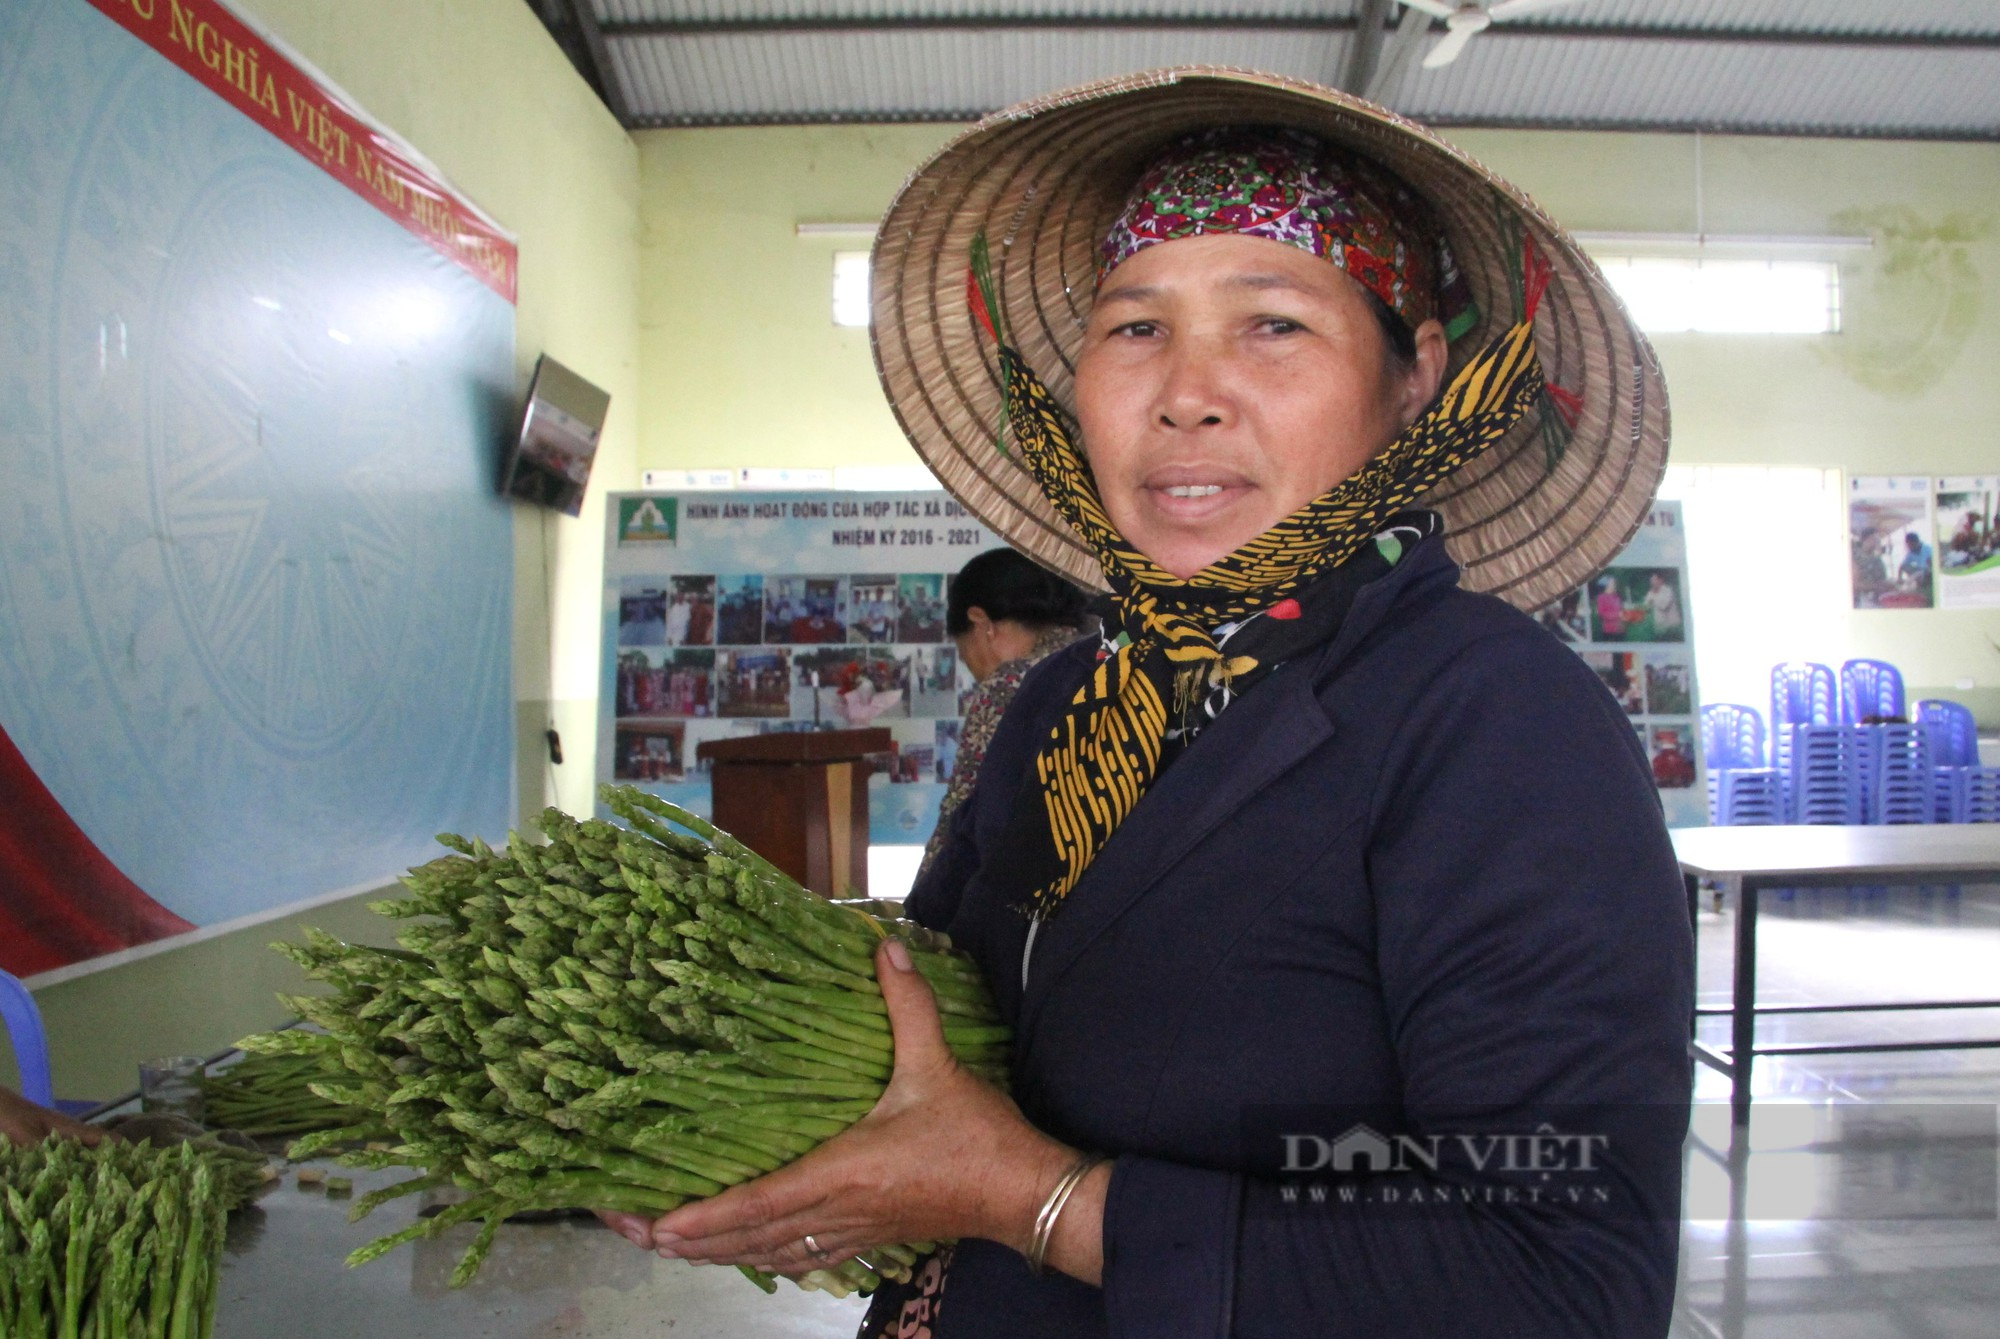 Người Chăm ở Ninh Thuận trồng rau gì mà cả thôn hộ nghèo giảm dần, hộ khá lên trông thấy - Ảnh 5.